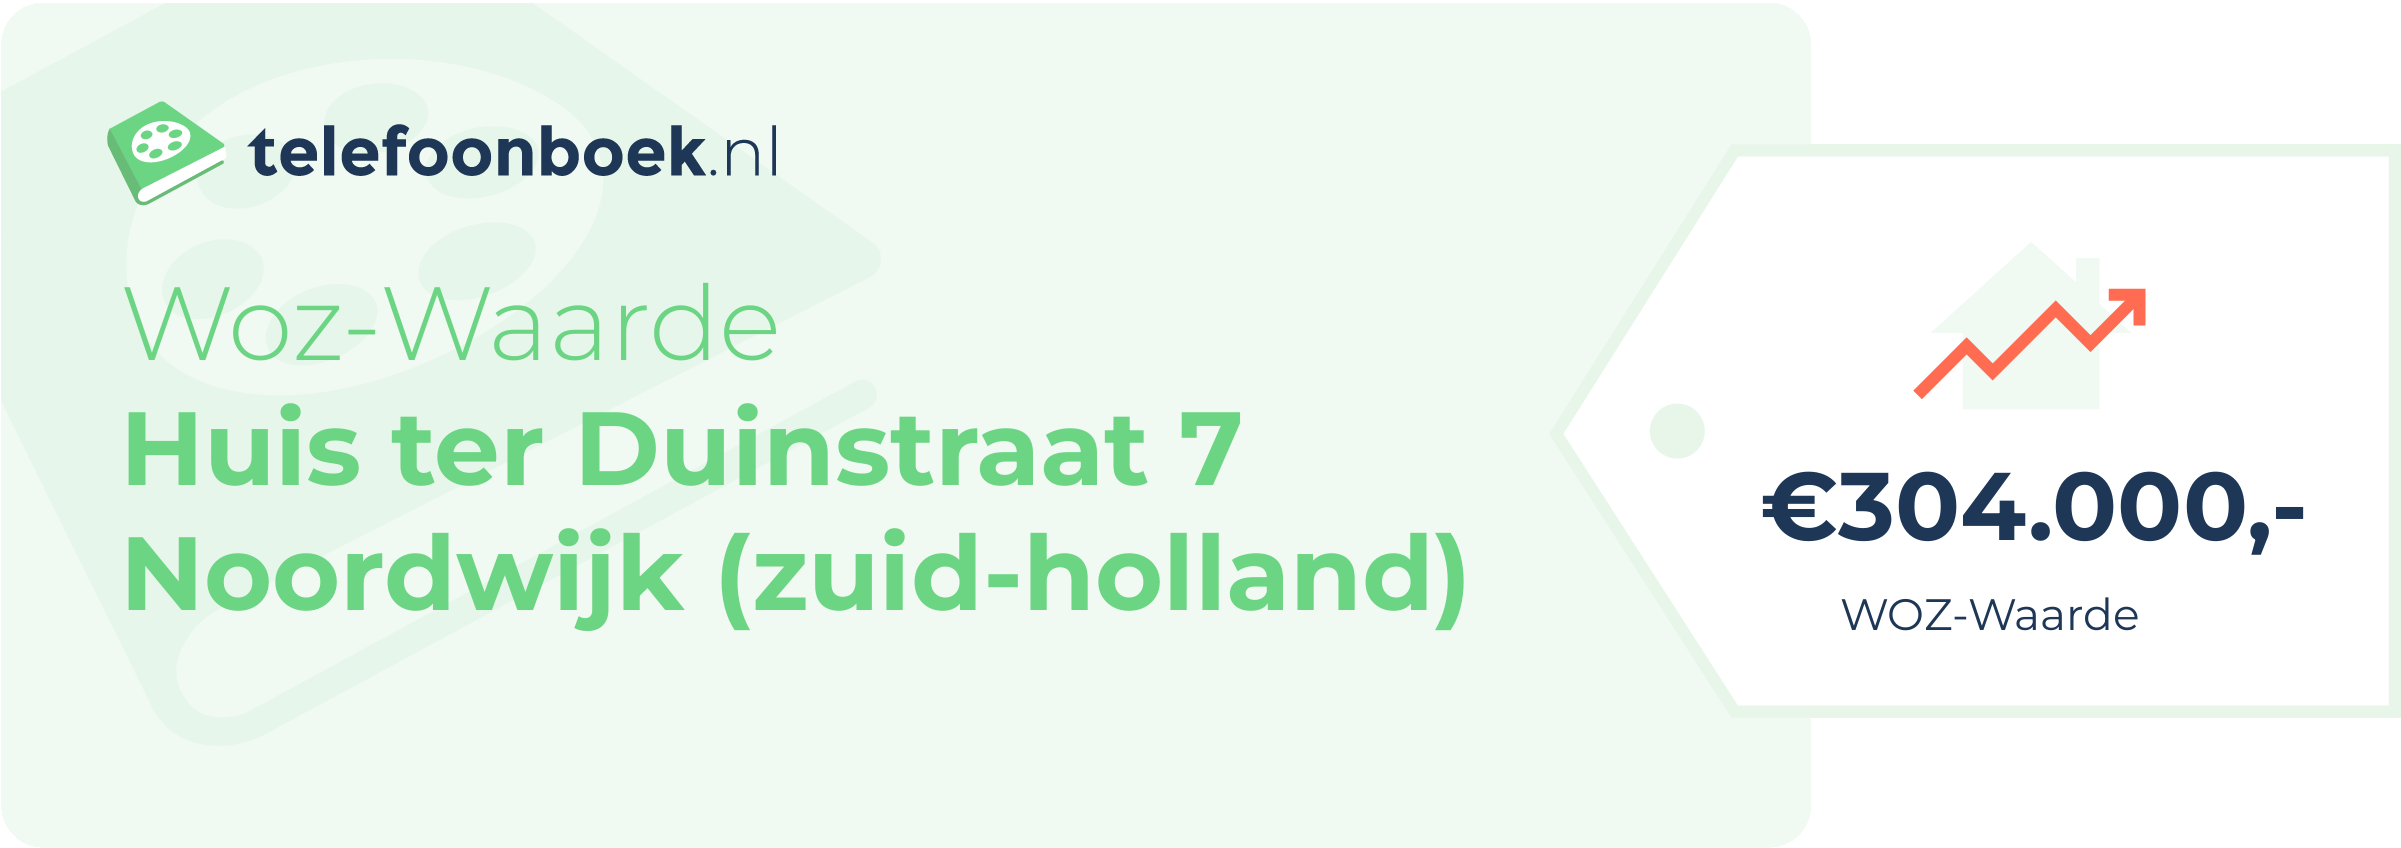 WOZ-waarde Huis Ter Duinstraat 7 Noordwijk (Zuid-Holland)